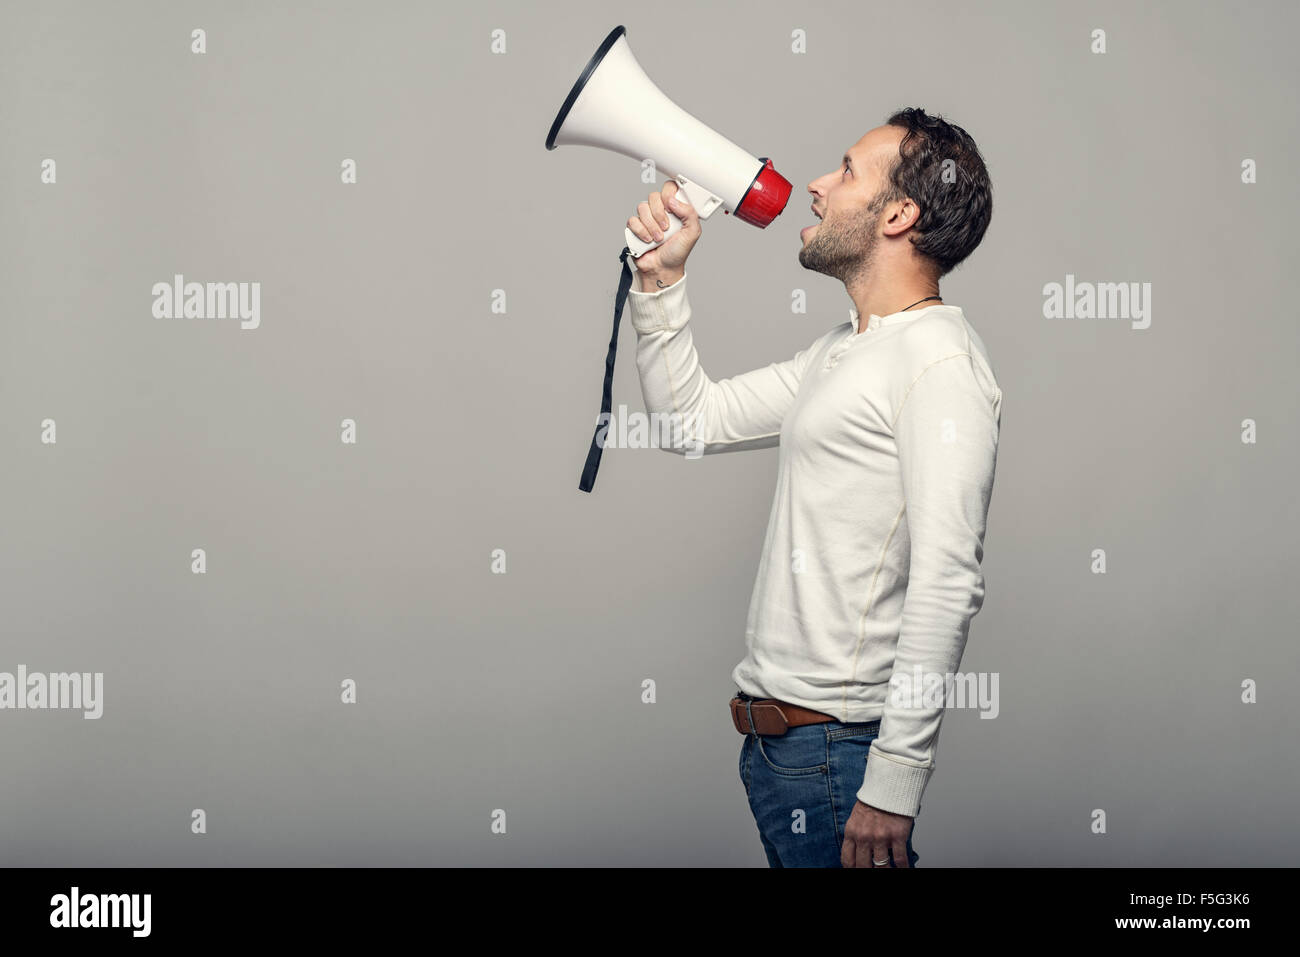 Uomo che parla in un megafono come egli fa un discorso pubblico, partecipa a una protesta o organizza un rally o promozione, oltre gr Foto Stock